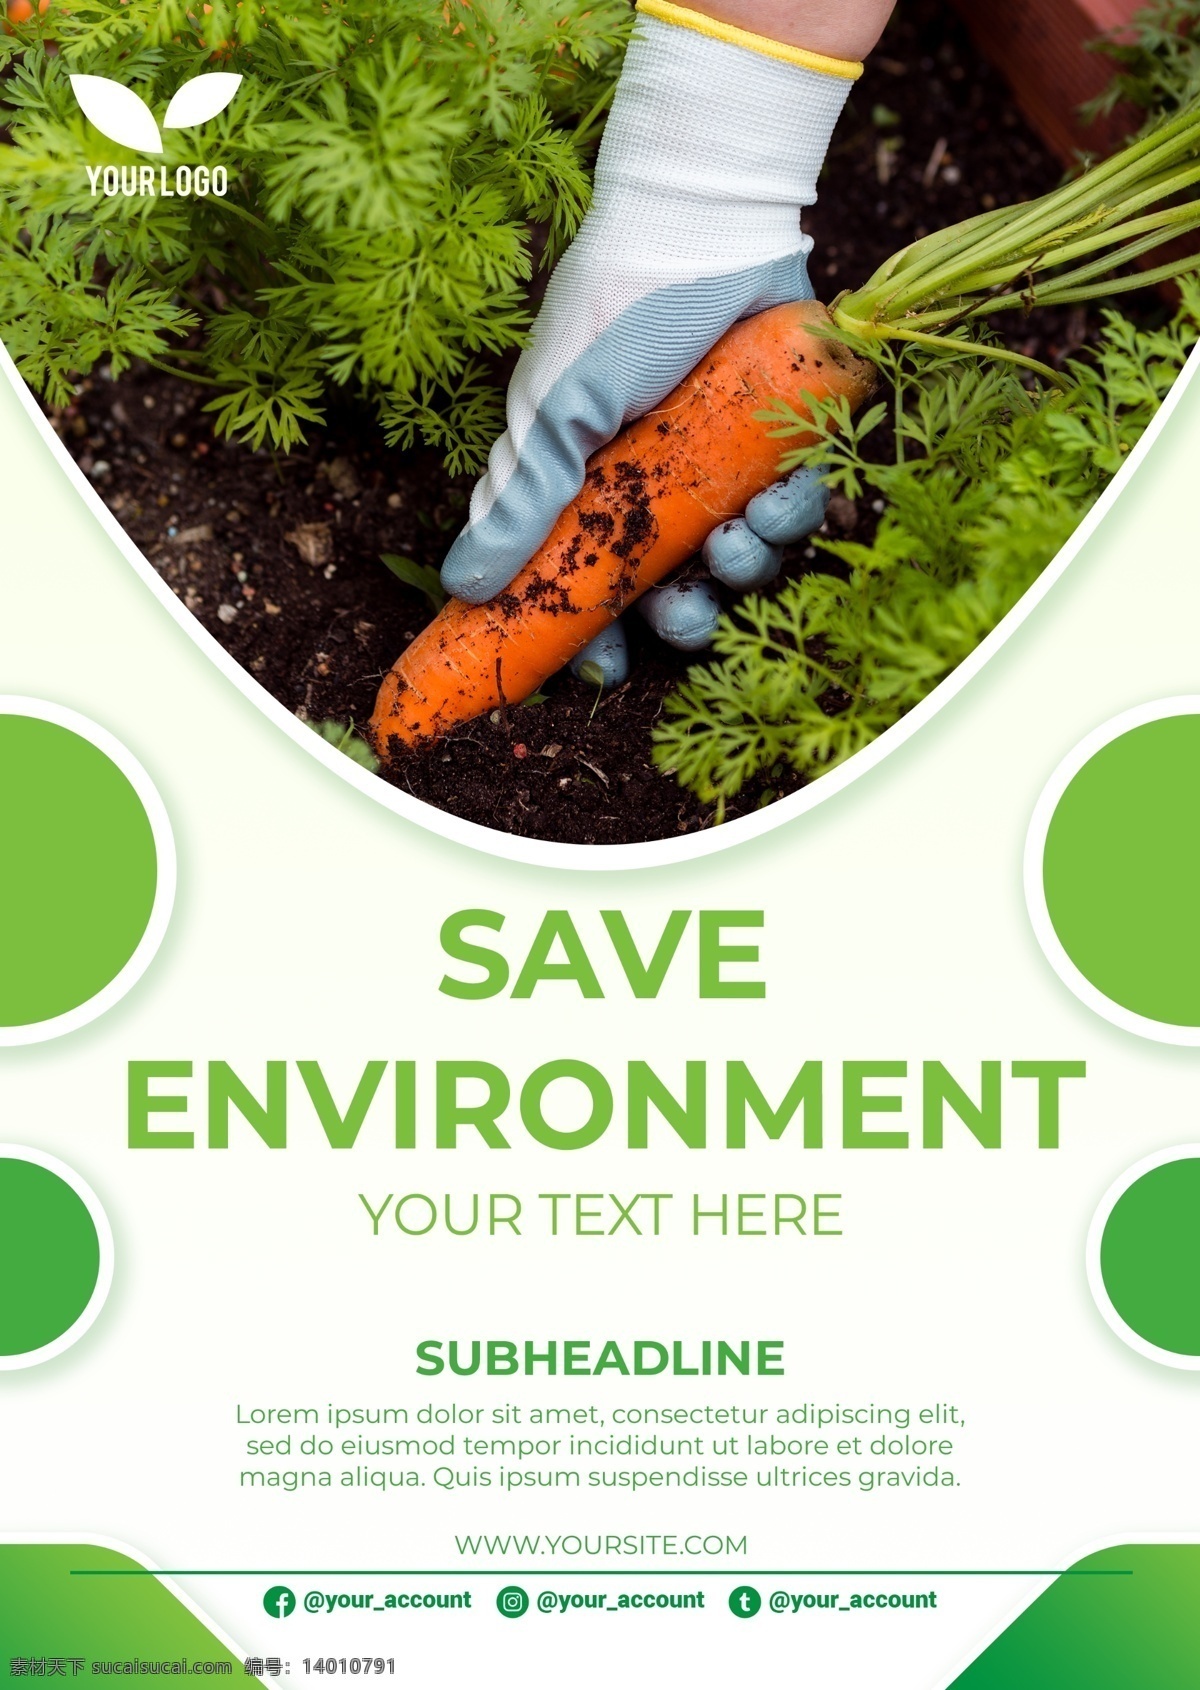 保护 原生态 环境 海报 保护环境 保护自然 环境保护 环保海报 psd素材